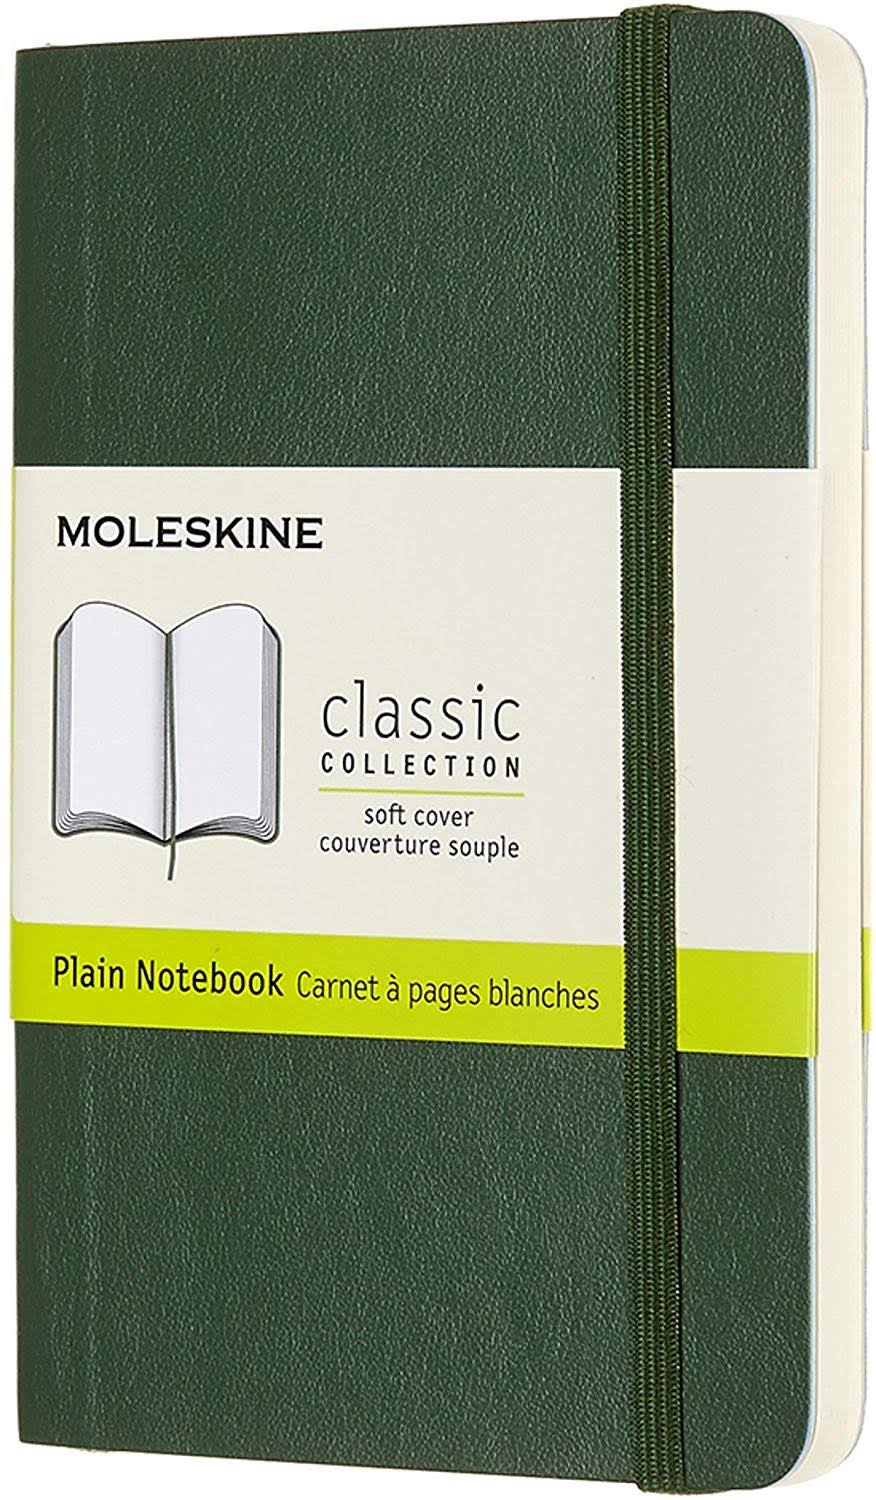 Moleskine Soft Cover Notebook - Myrtle Green Pocket / Plain